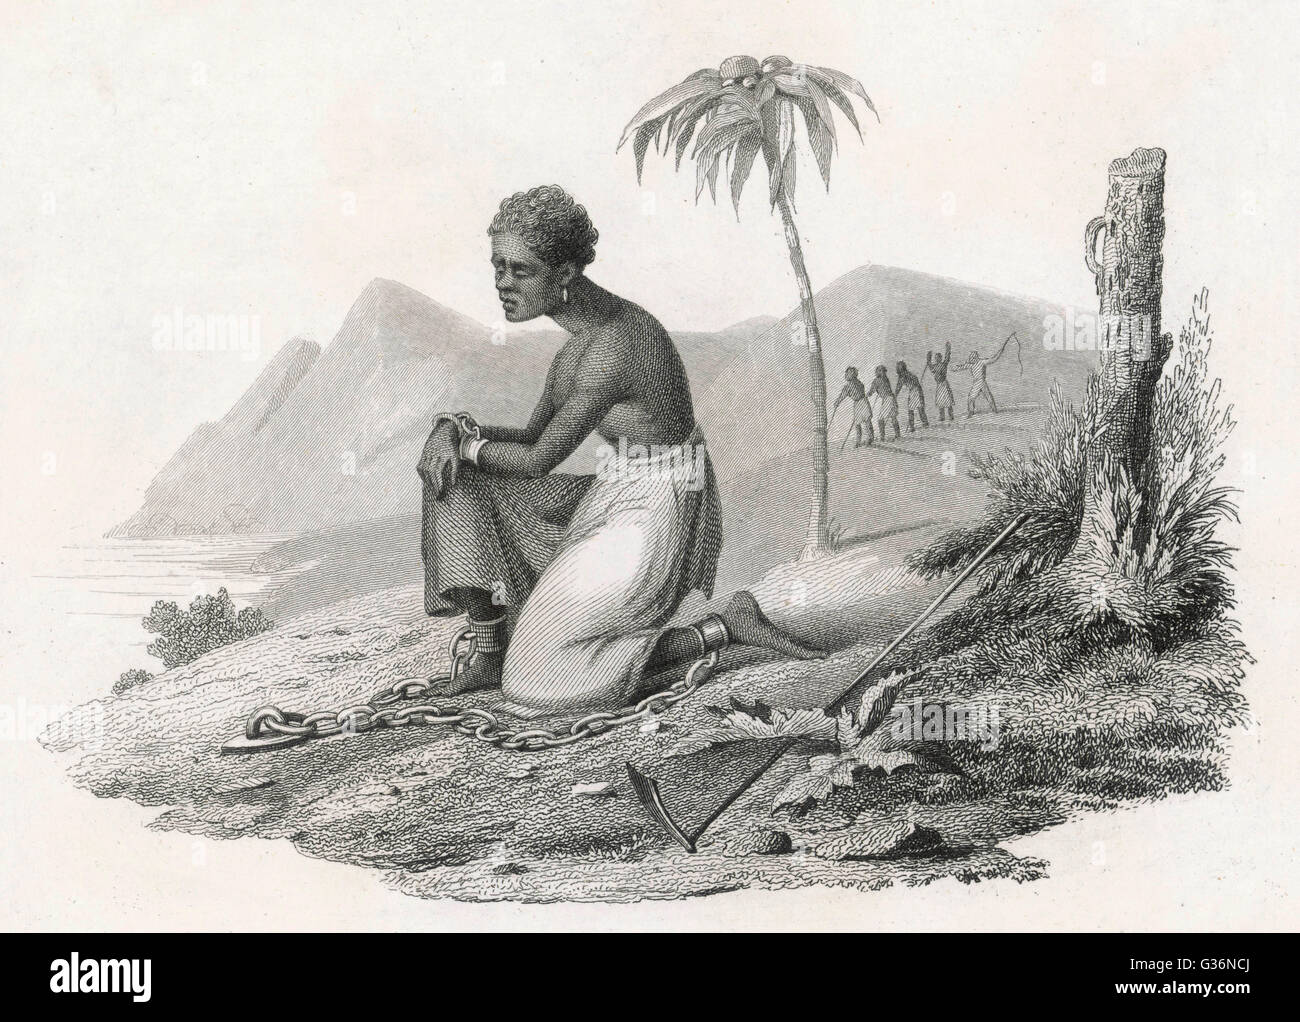 Una Schiava In Catene In Epoca Indie Occidentale Immagini e Fotos Stock -  Alamy